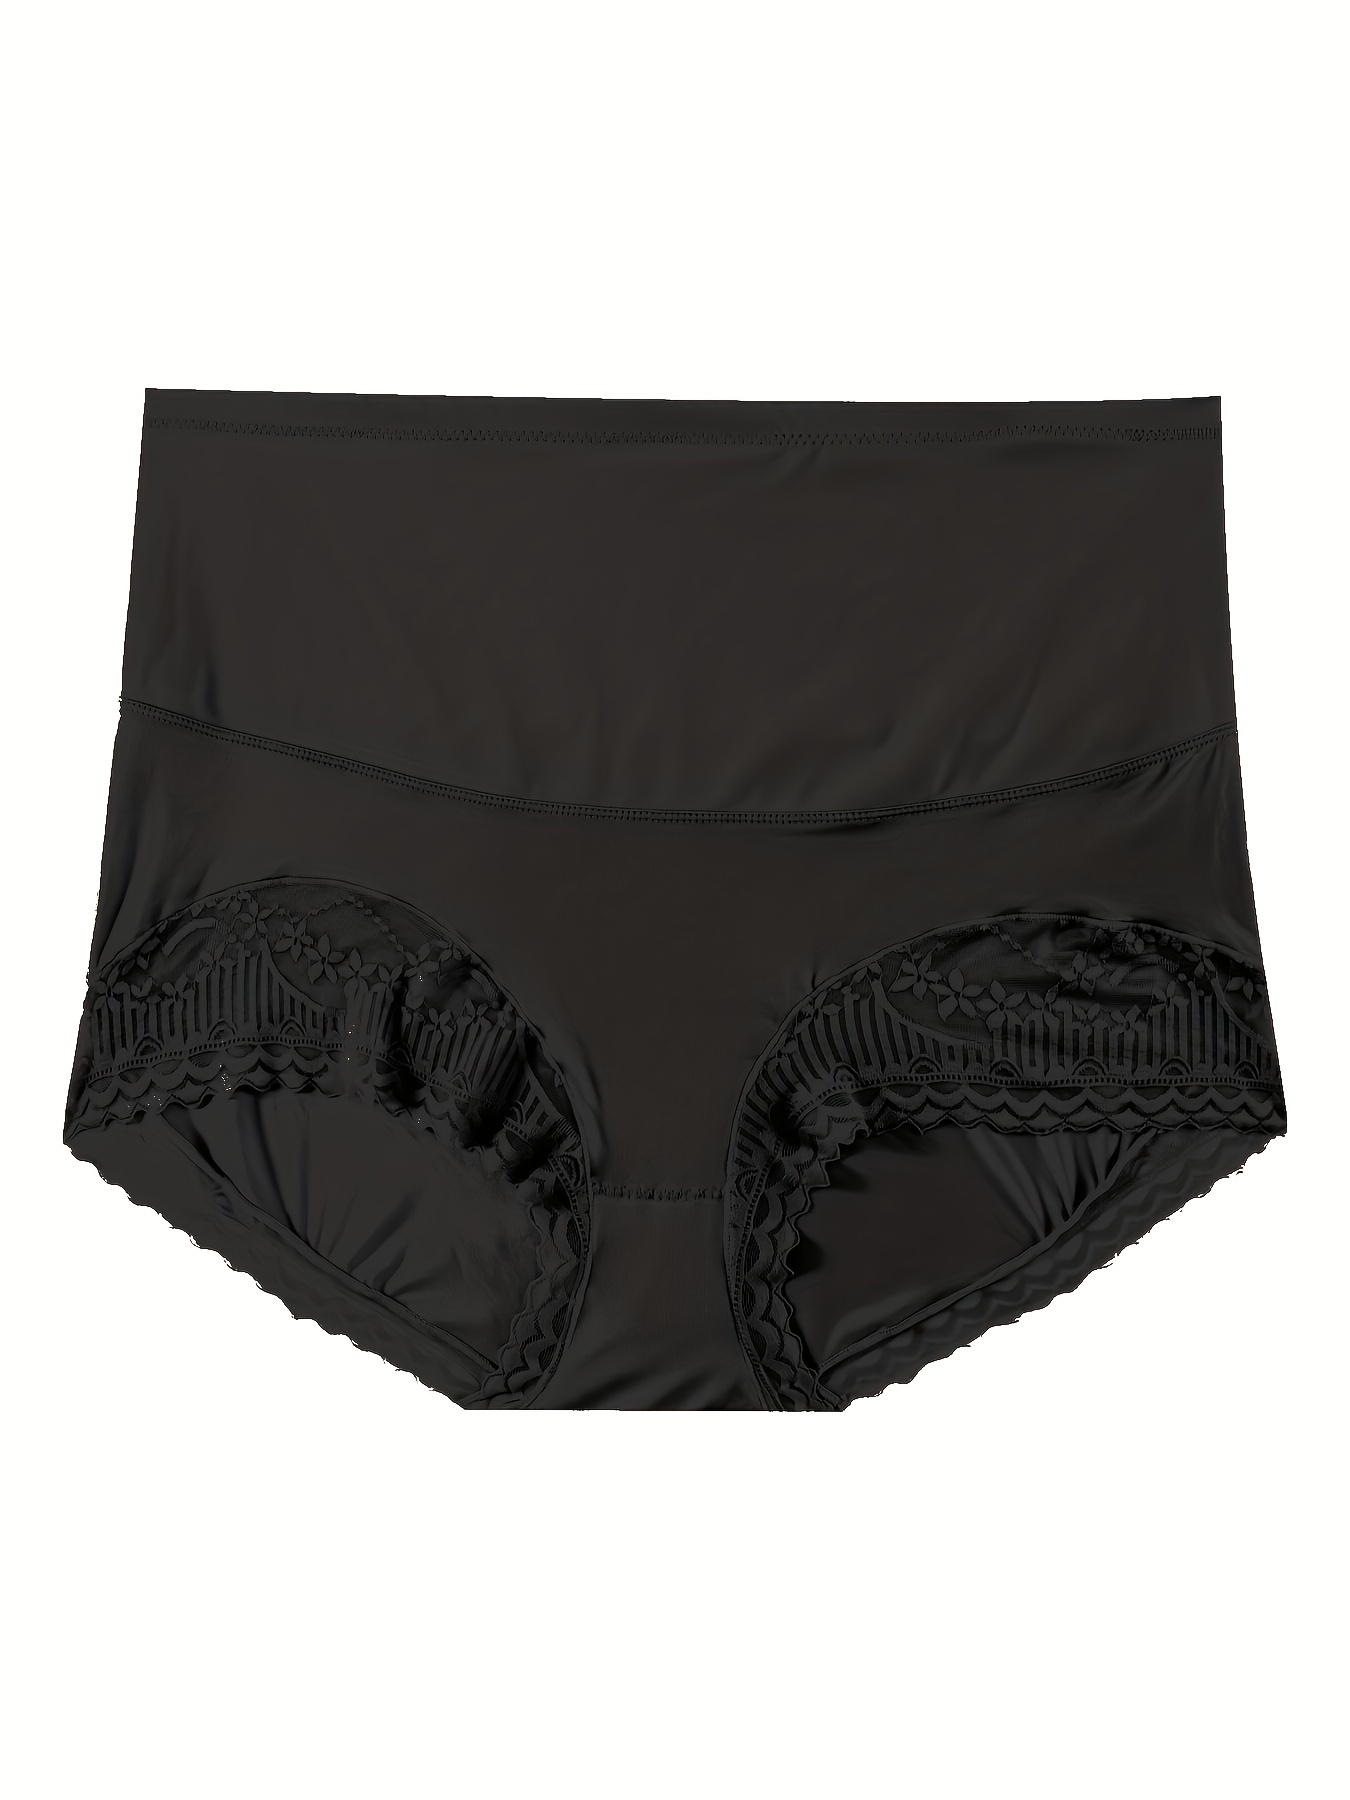 Women Panties Briefs Control Panties 2,3 or 6 Pack Satin 2 Pocket Hi-Waist  S-2XL